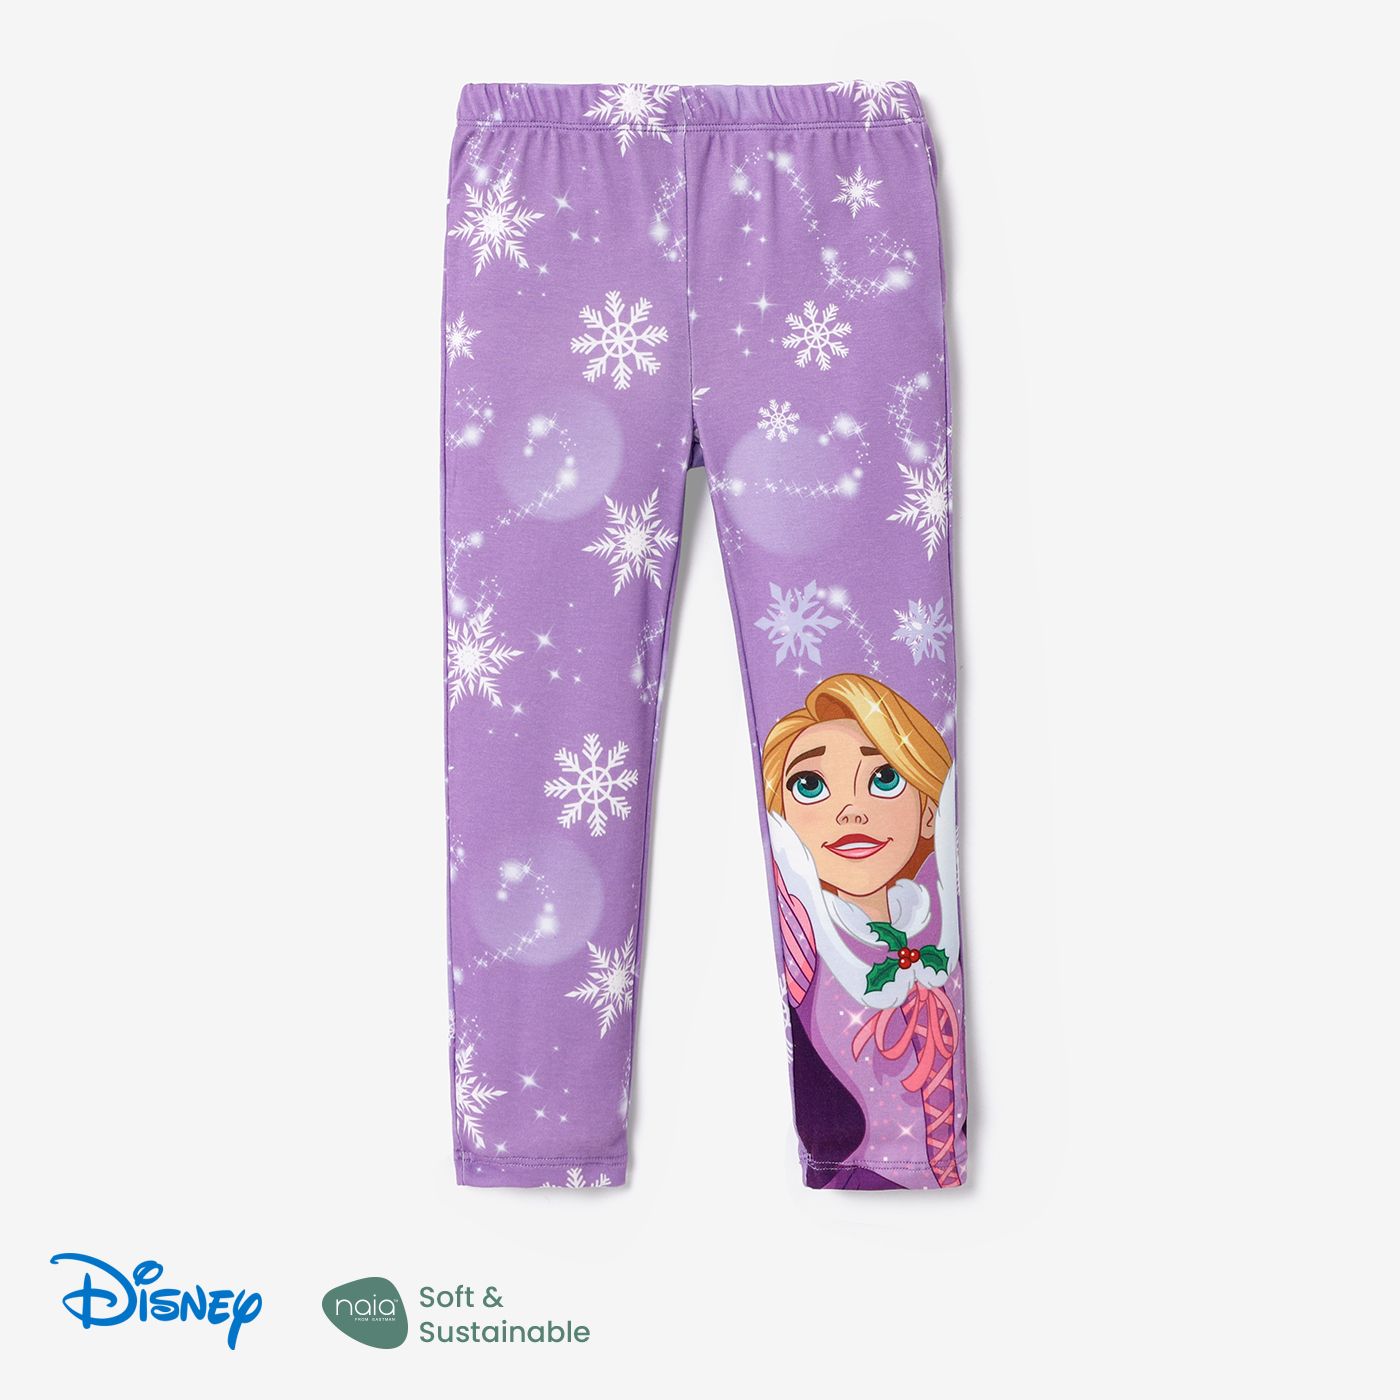 Disney Princess Toddler Girl Naiaâ¢ Character & Snowflake Print Leggings